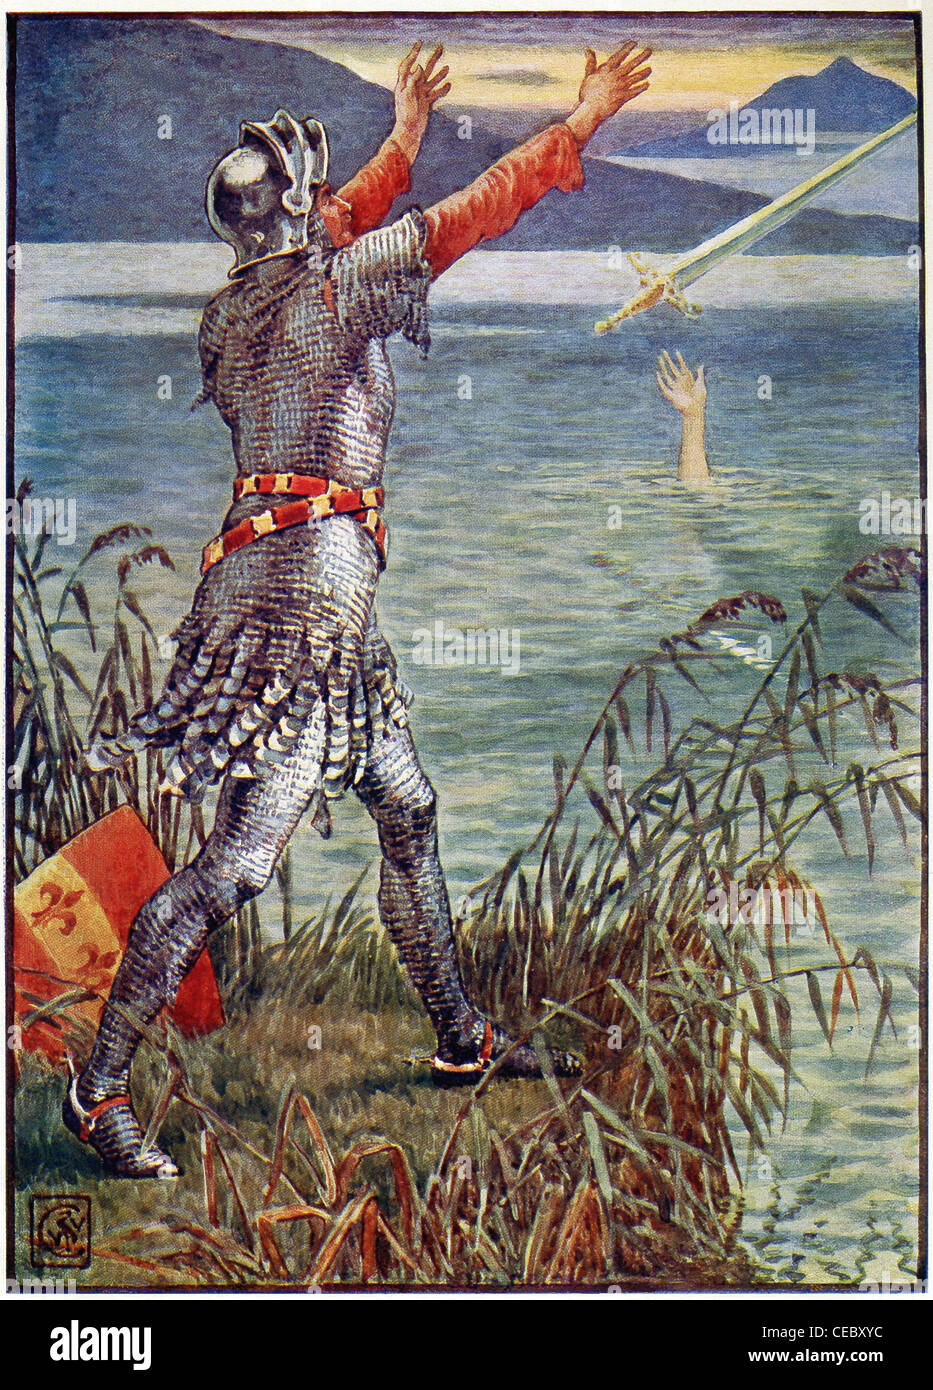 Sir Bedivere gibt zurück, das Schwert Excalibur, das King Arthur benutzt hatte, aber jetzt ist er tot, der Dame des Sees. Stockfoto